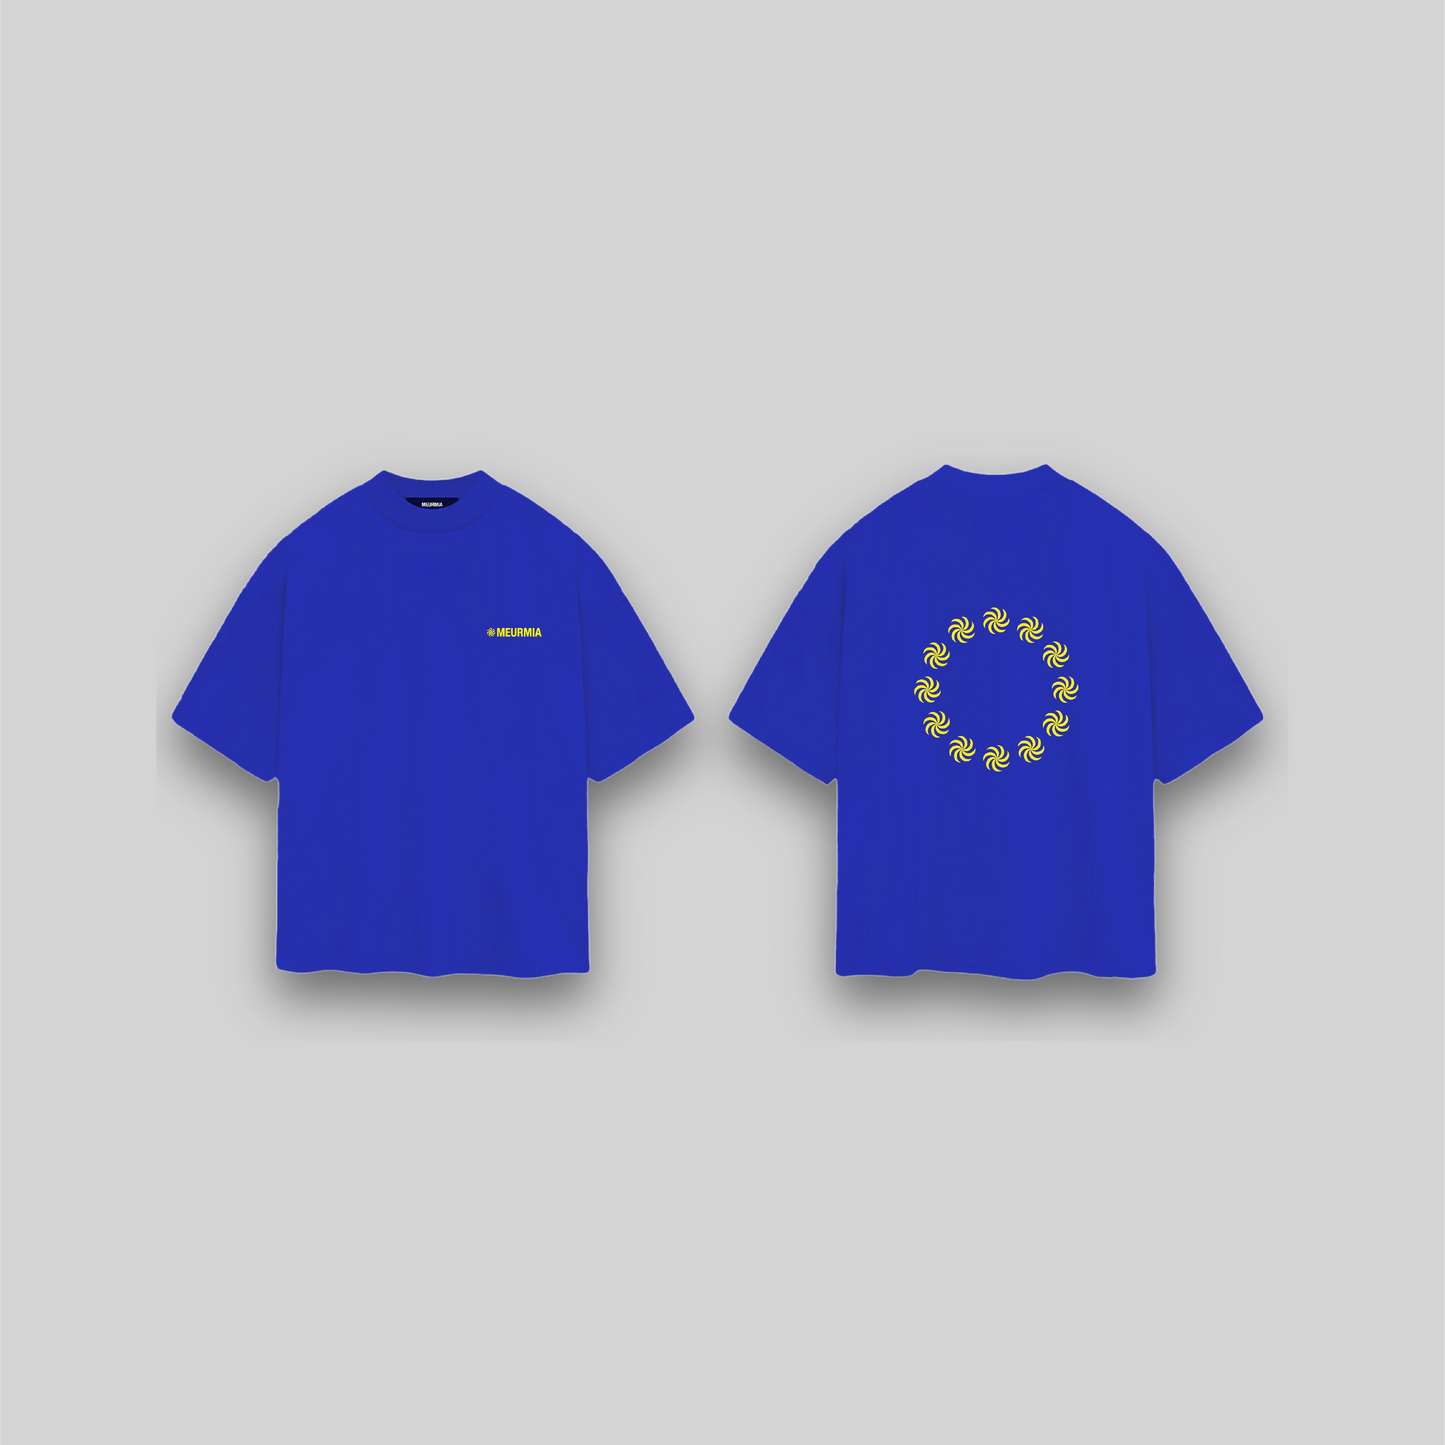 "EUROPA" T-SHIRT